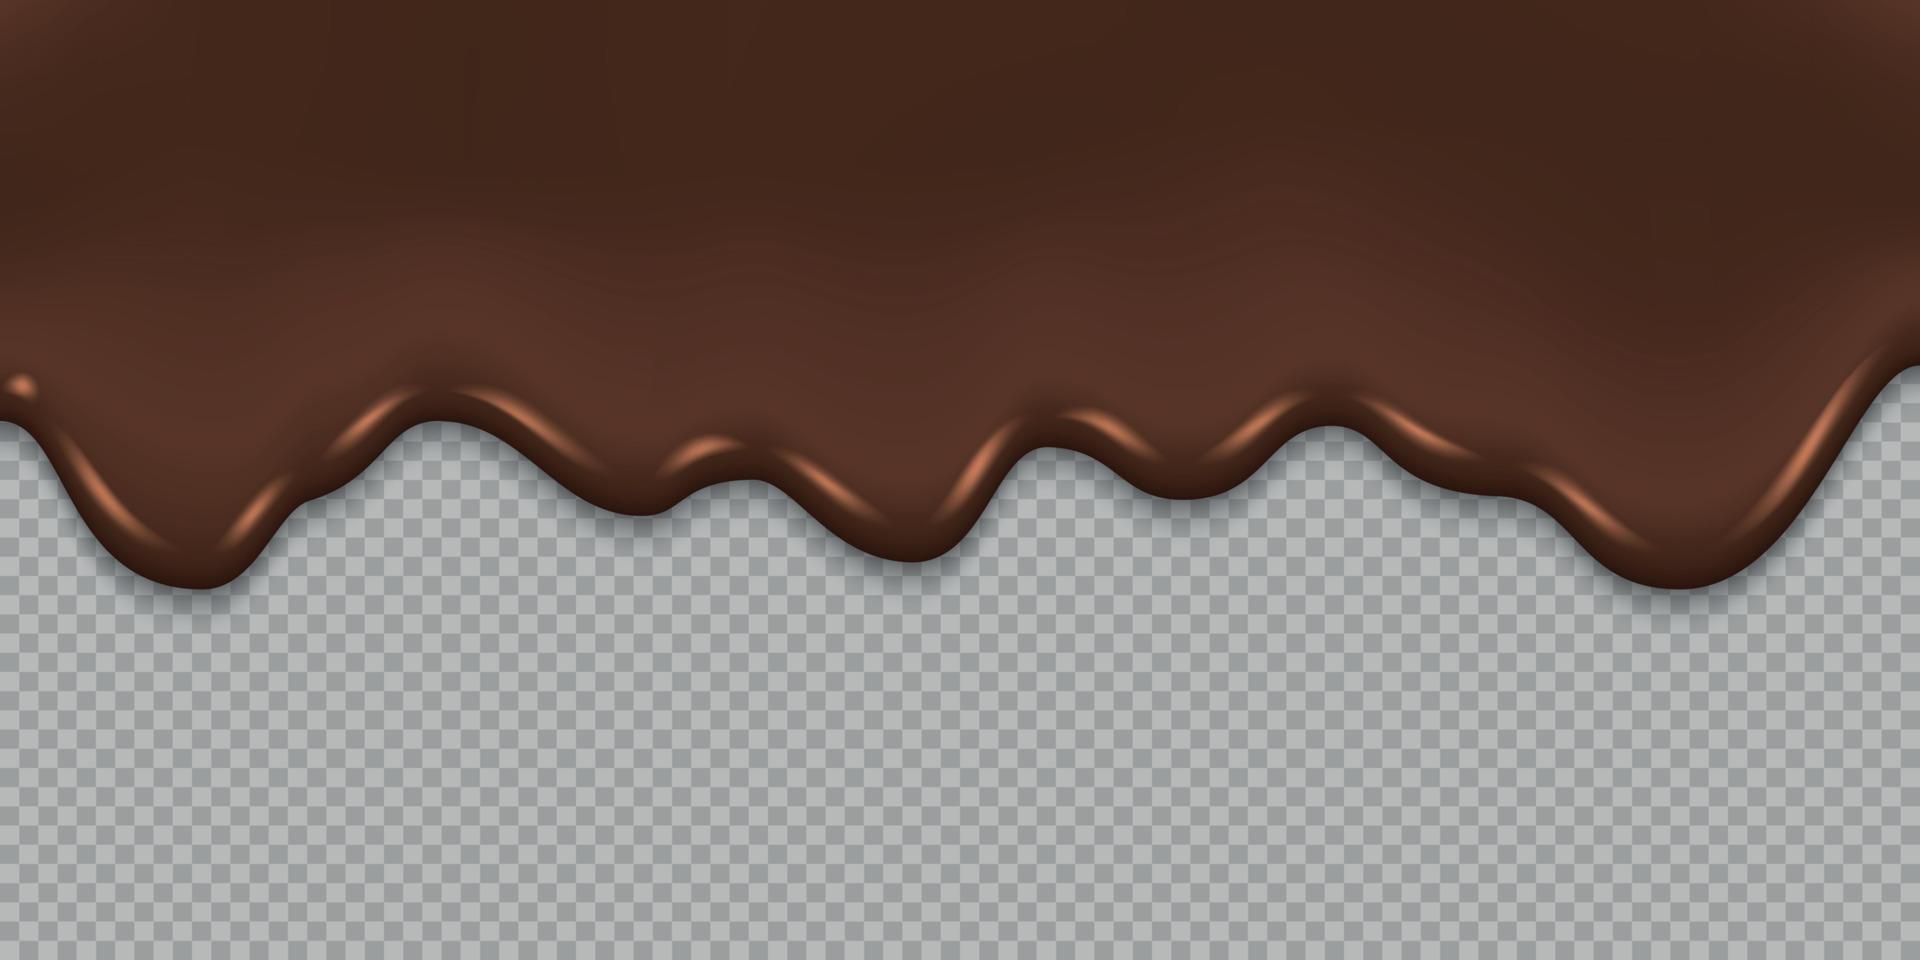 plantilla de fondo de chocolate derretido que gotea para su diseño vector